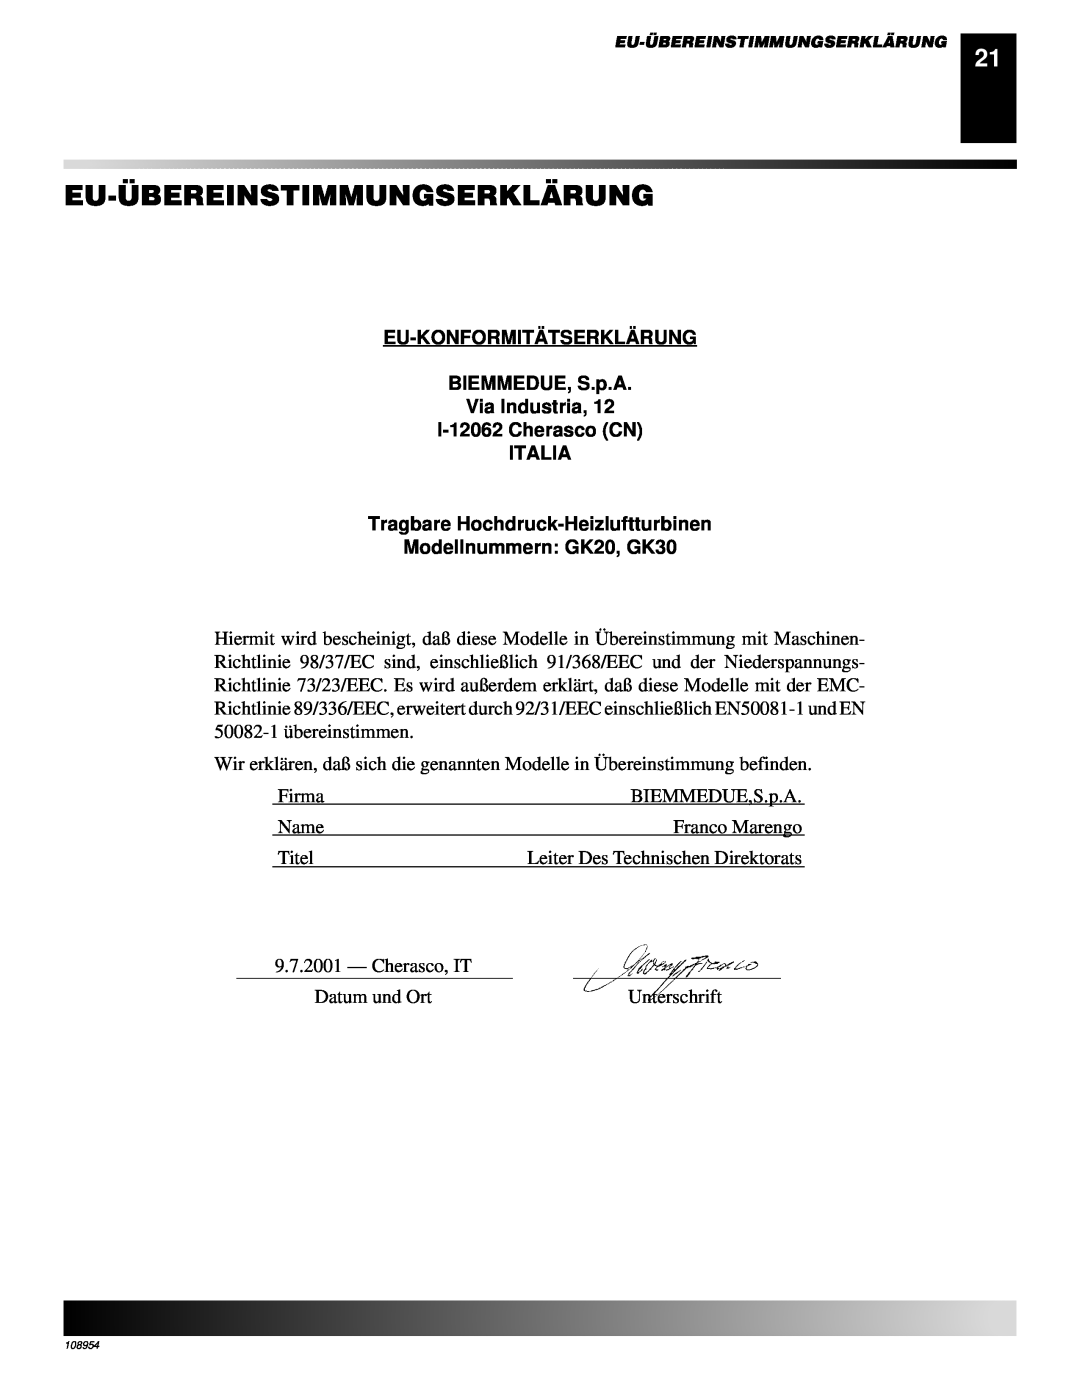 Desa GK30 Eu-Übereinstimmungserklärung, EU-KONFORMITÄTSERKLÄ RUNG BIEMMEDUE, S.p.A, Tragbare Hochdruck-Heizluftturbinen 